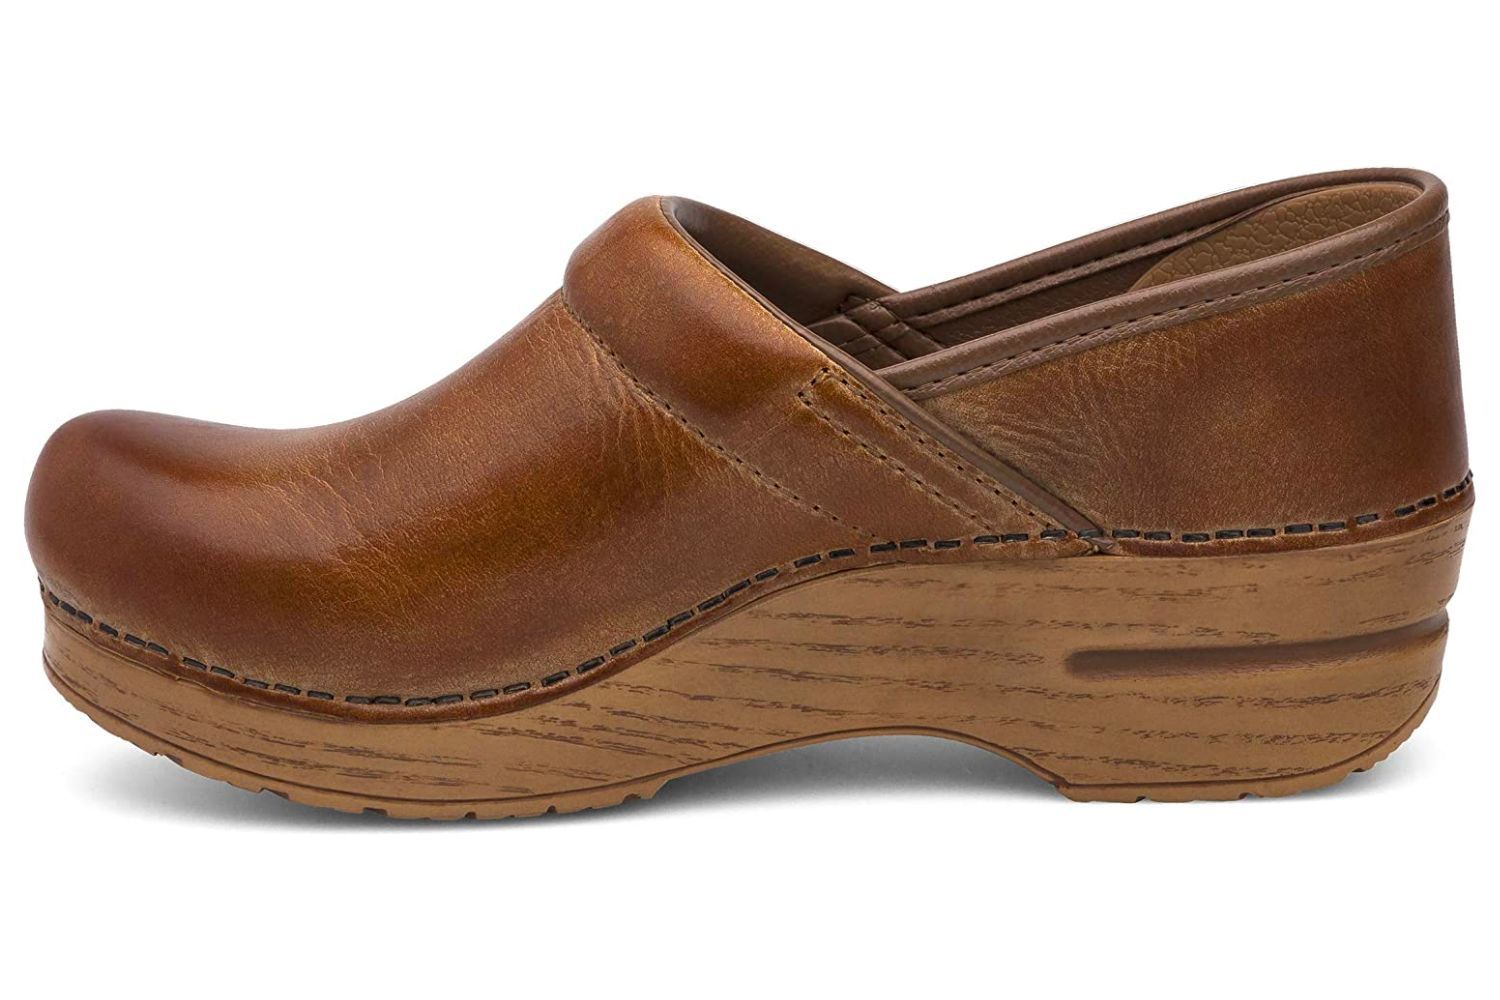 Dansko专业木屐鞋